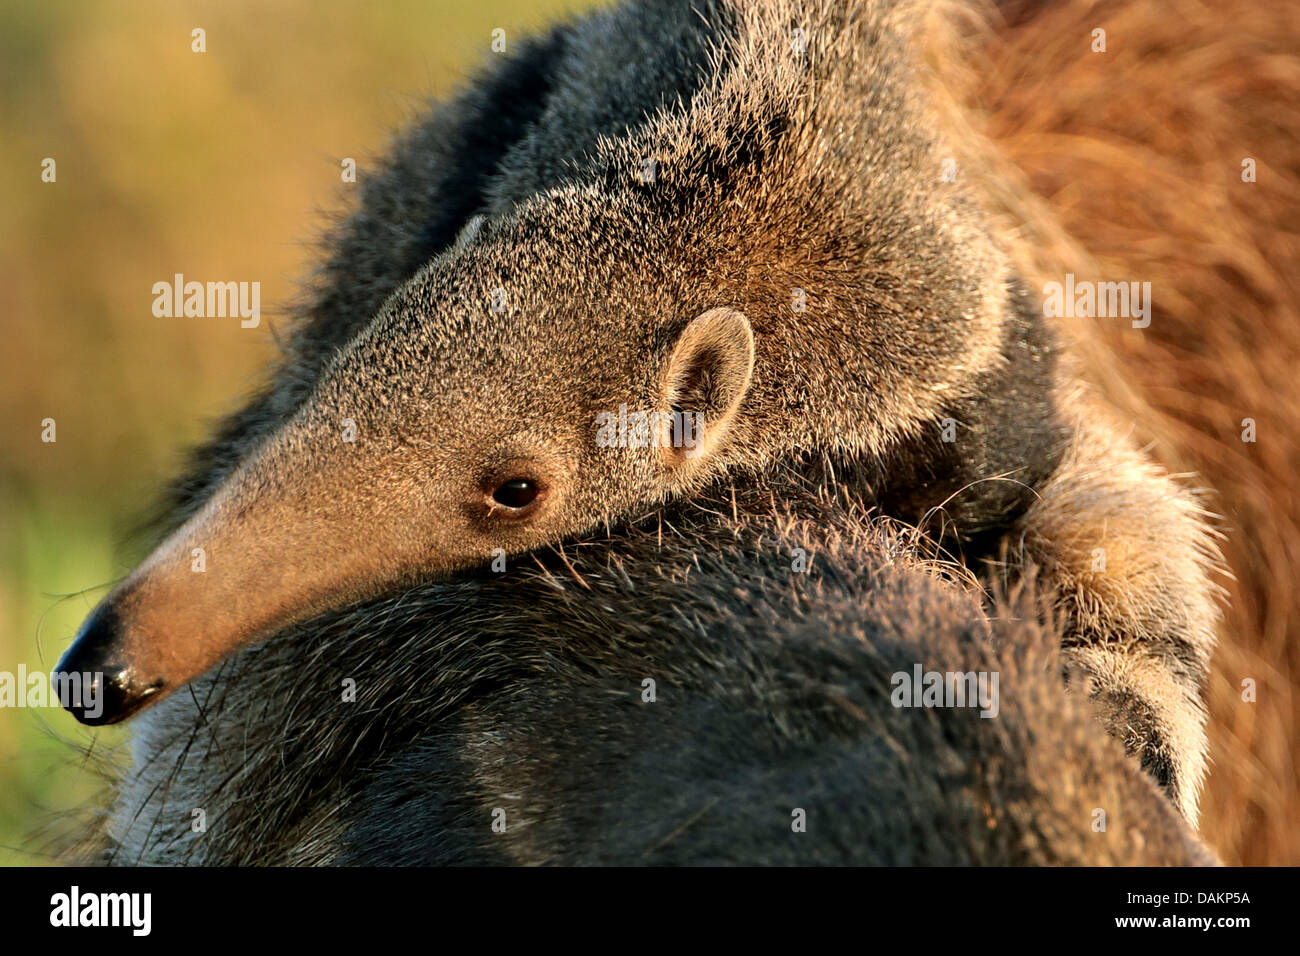 Oso hormiguero gigante (Myrmecophaga tridactyla), niño sentado en la parte de atrás de la madre, Brasil, Mato Grosso do Sul Foto de stock